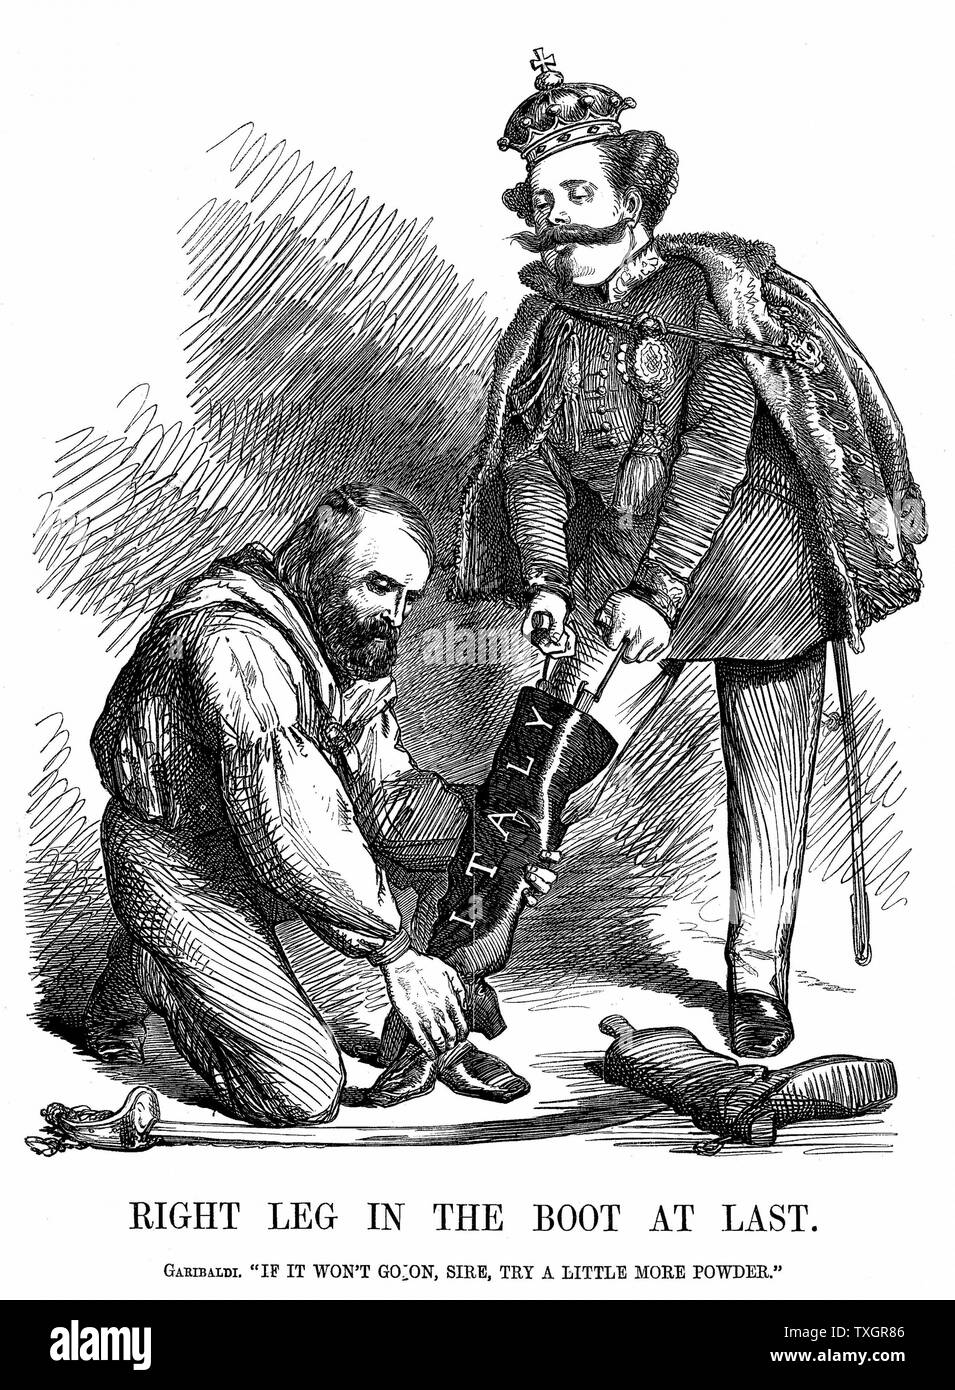 Unification de l'Italie : Giuseppe Garibaldi (1807-82) aider Victor Emmanuel II (1820-78) mis sur la botte de l'Italie. John Tenniel caricature de 'Punch' 17 novembre 1860 la gravure sur bois de Londres Banque D'Images